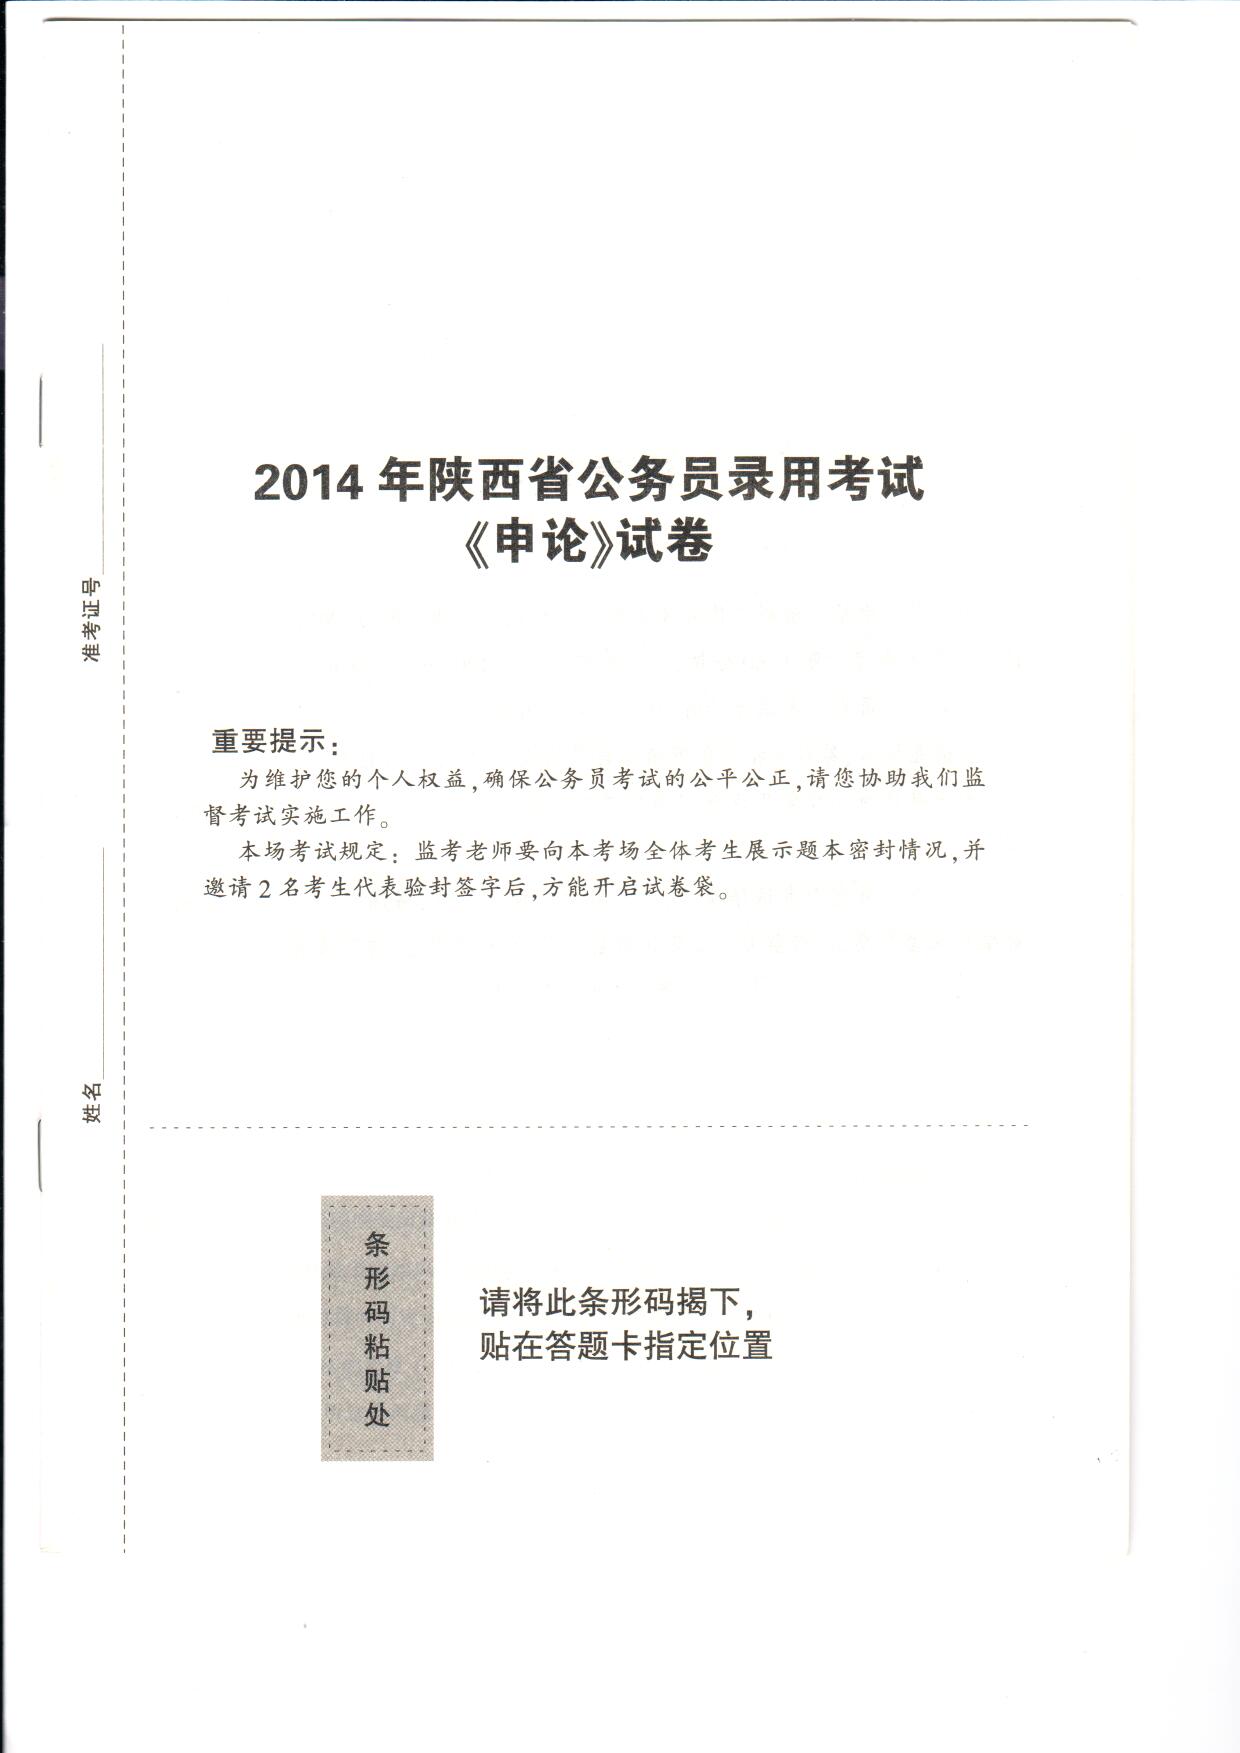 徐律师的评论被2014年陕西公务员考试收录-1.jpg